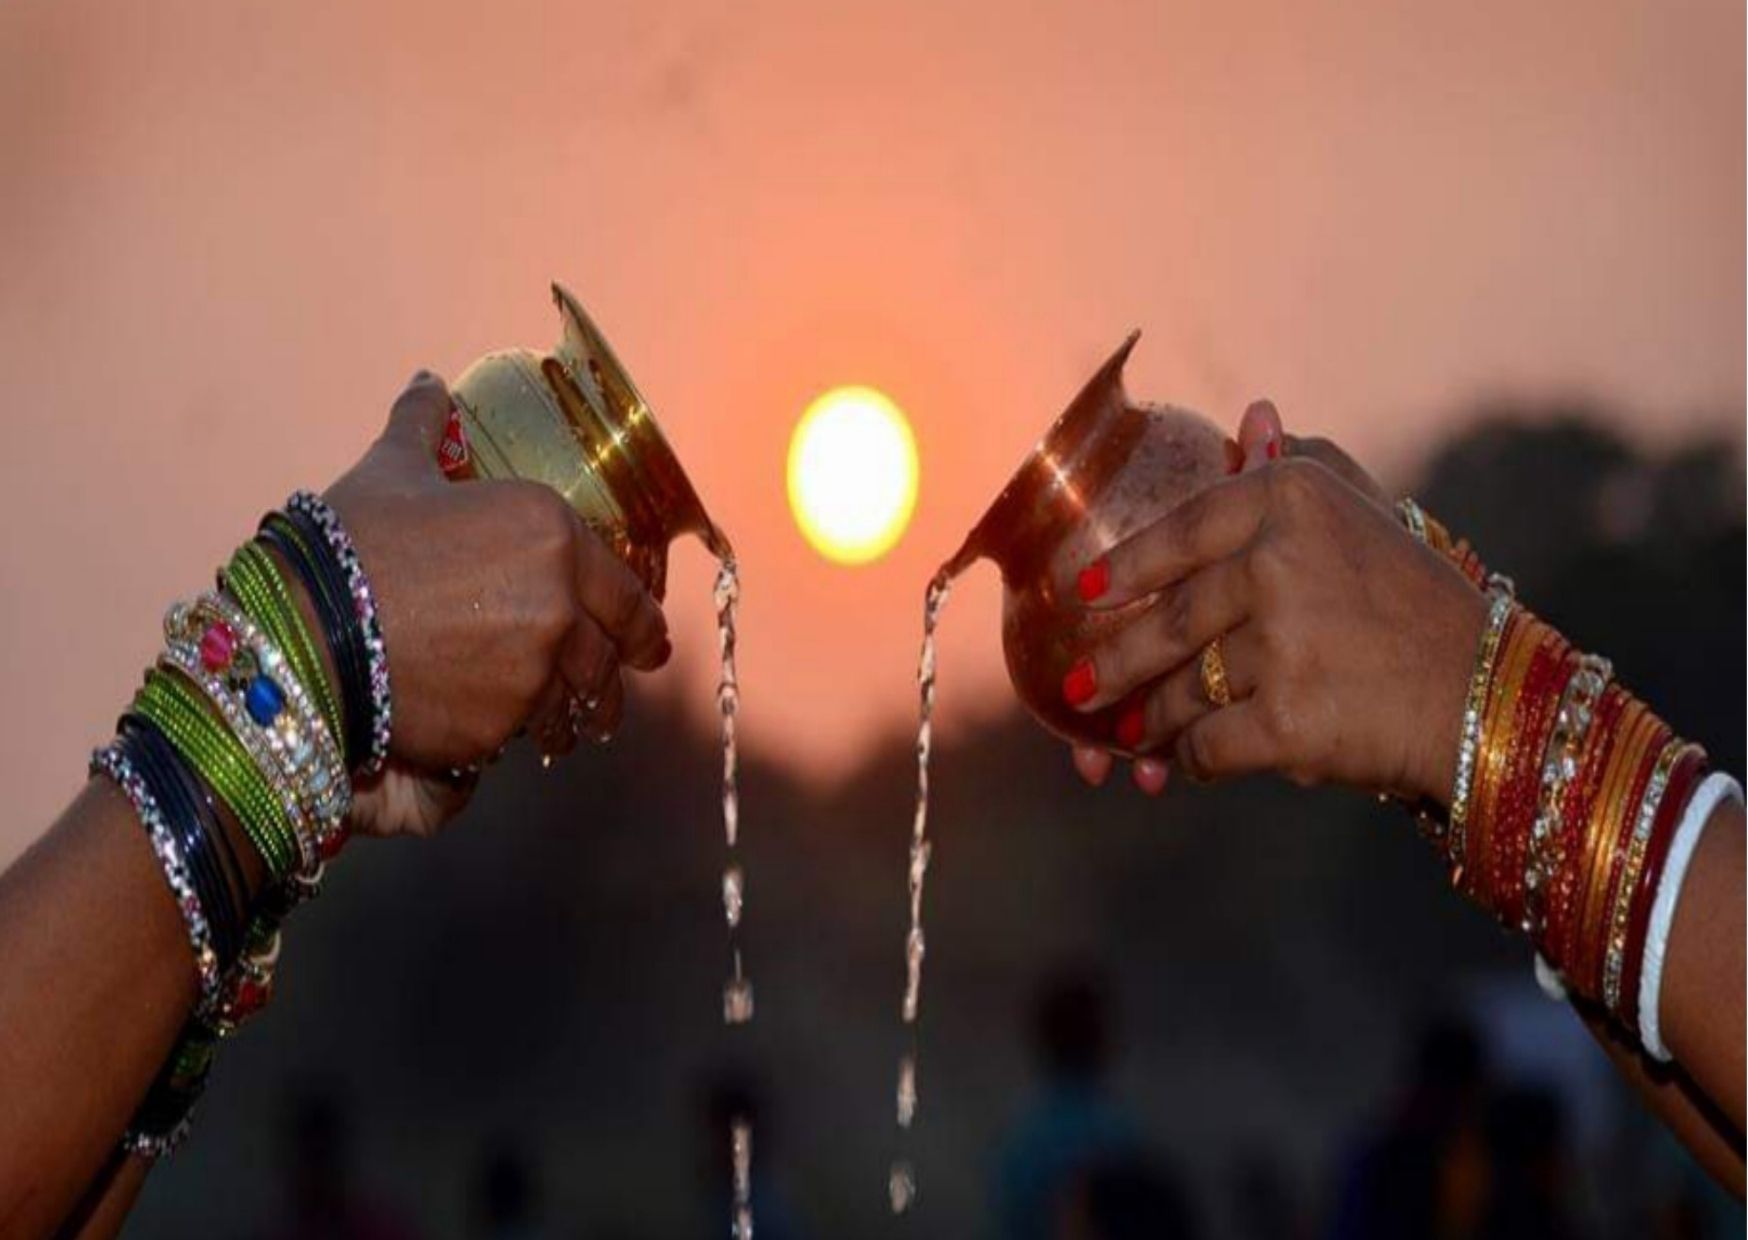 chhath puja bihar festival for worshipping sun god and chatti maiyya worship